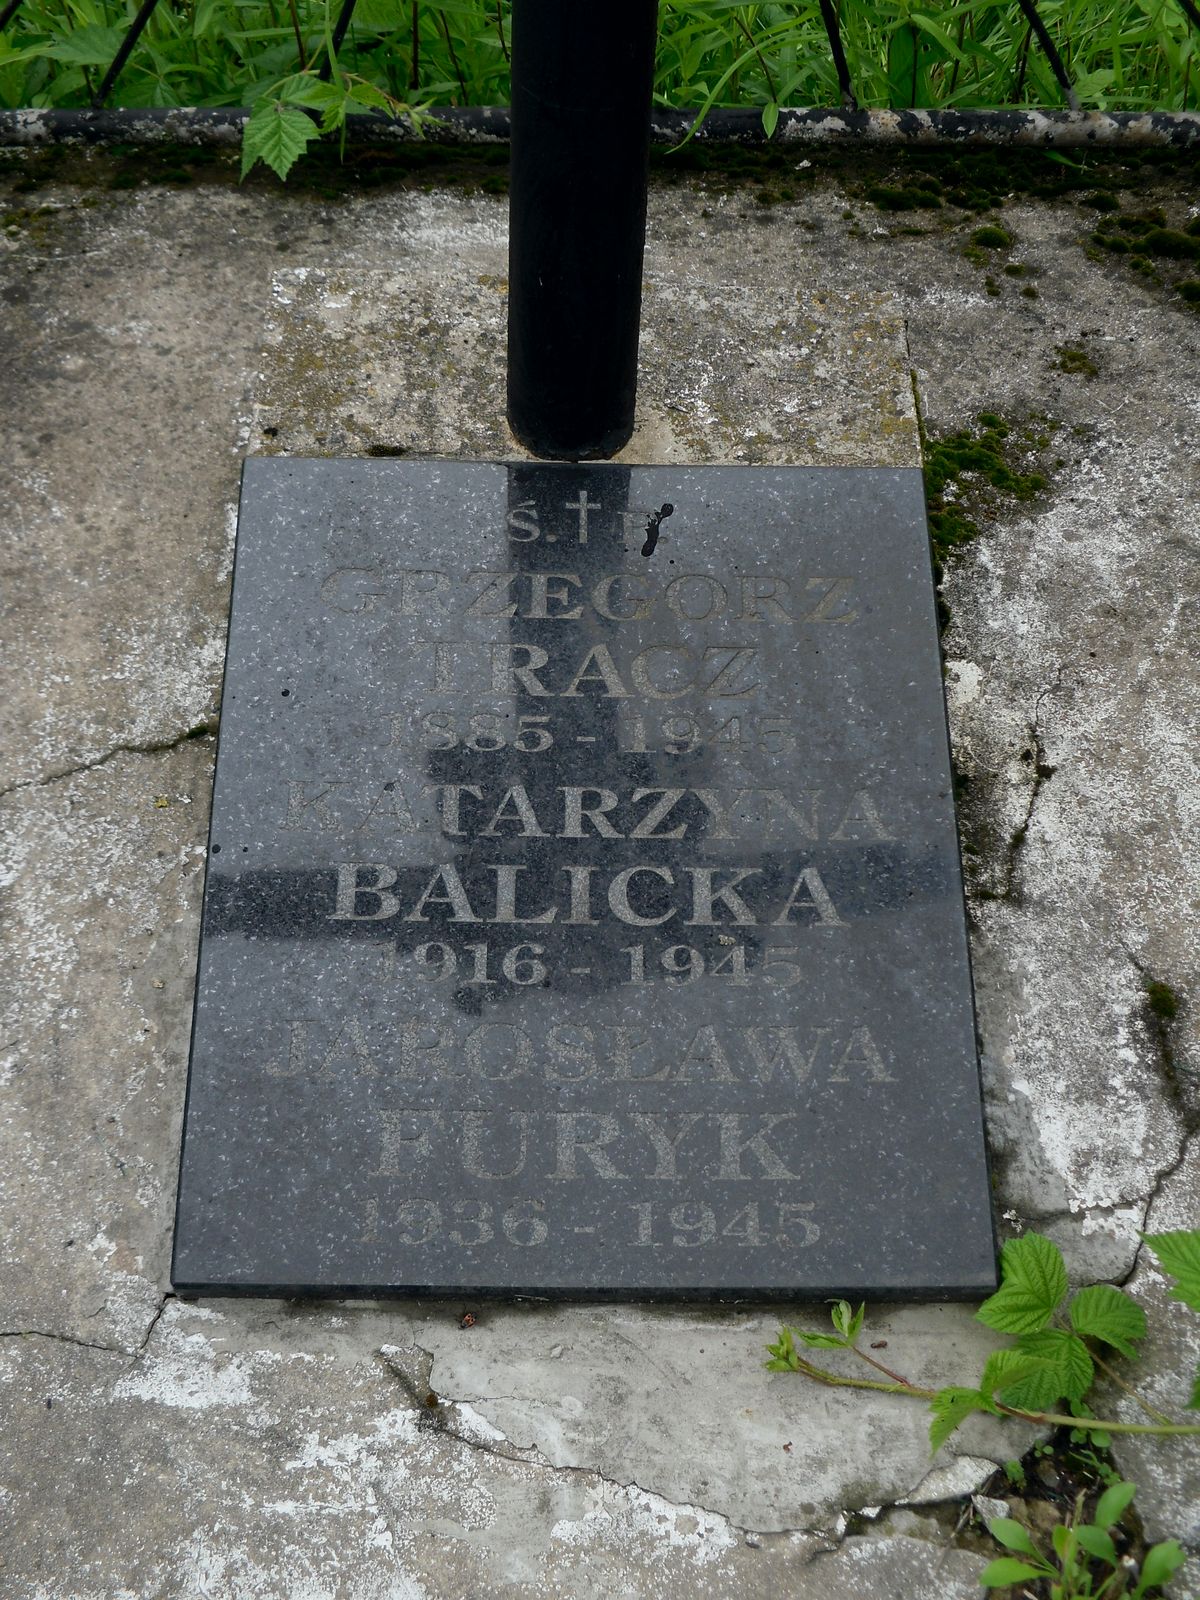 The gravestone of Katarzyna Balicka, Jarosława Furyk and Grzegorz Tracz. Cemetery in Pleszkowce